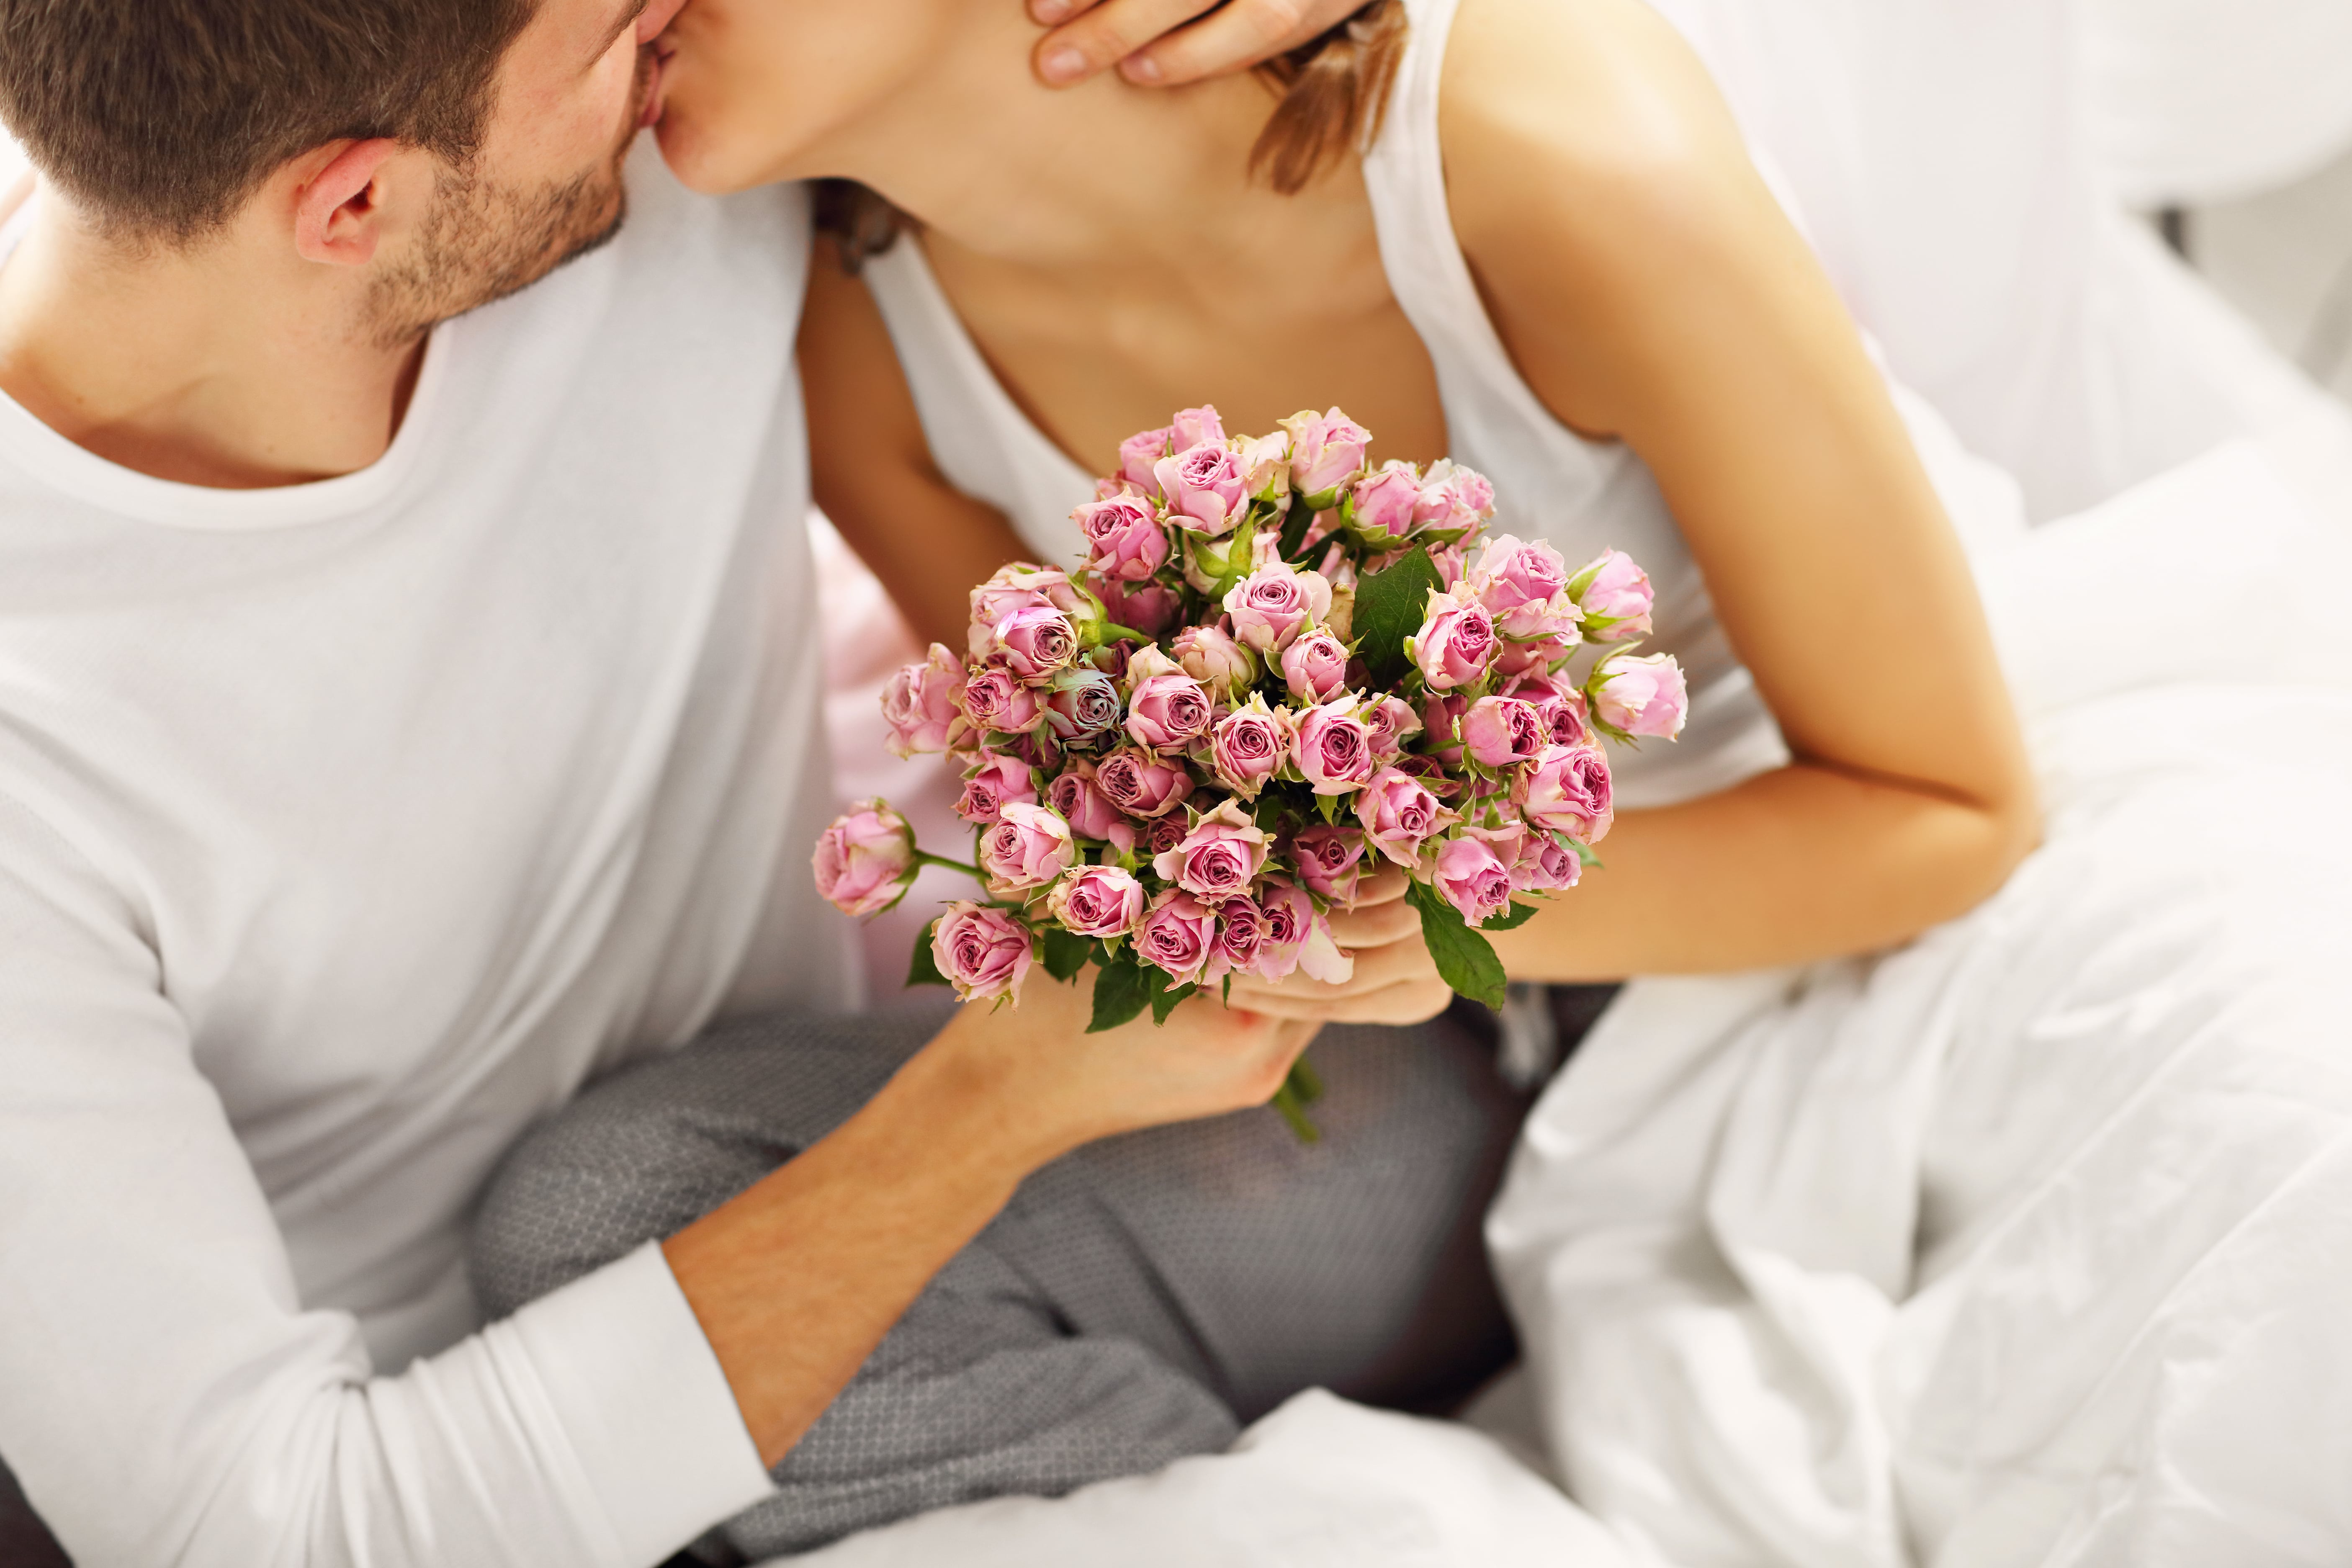 Дарит жене цветы и обнимает